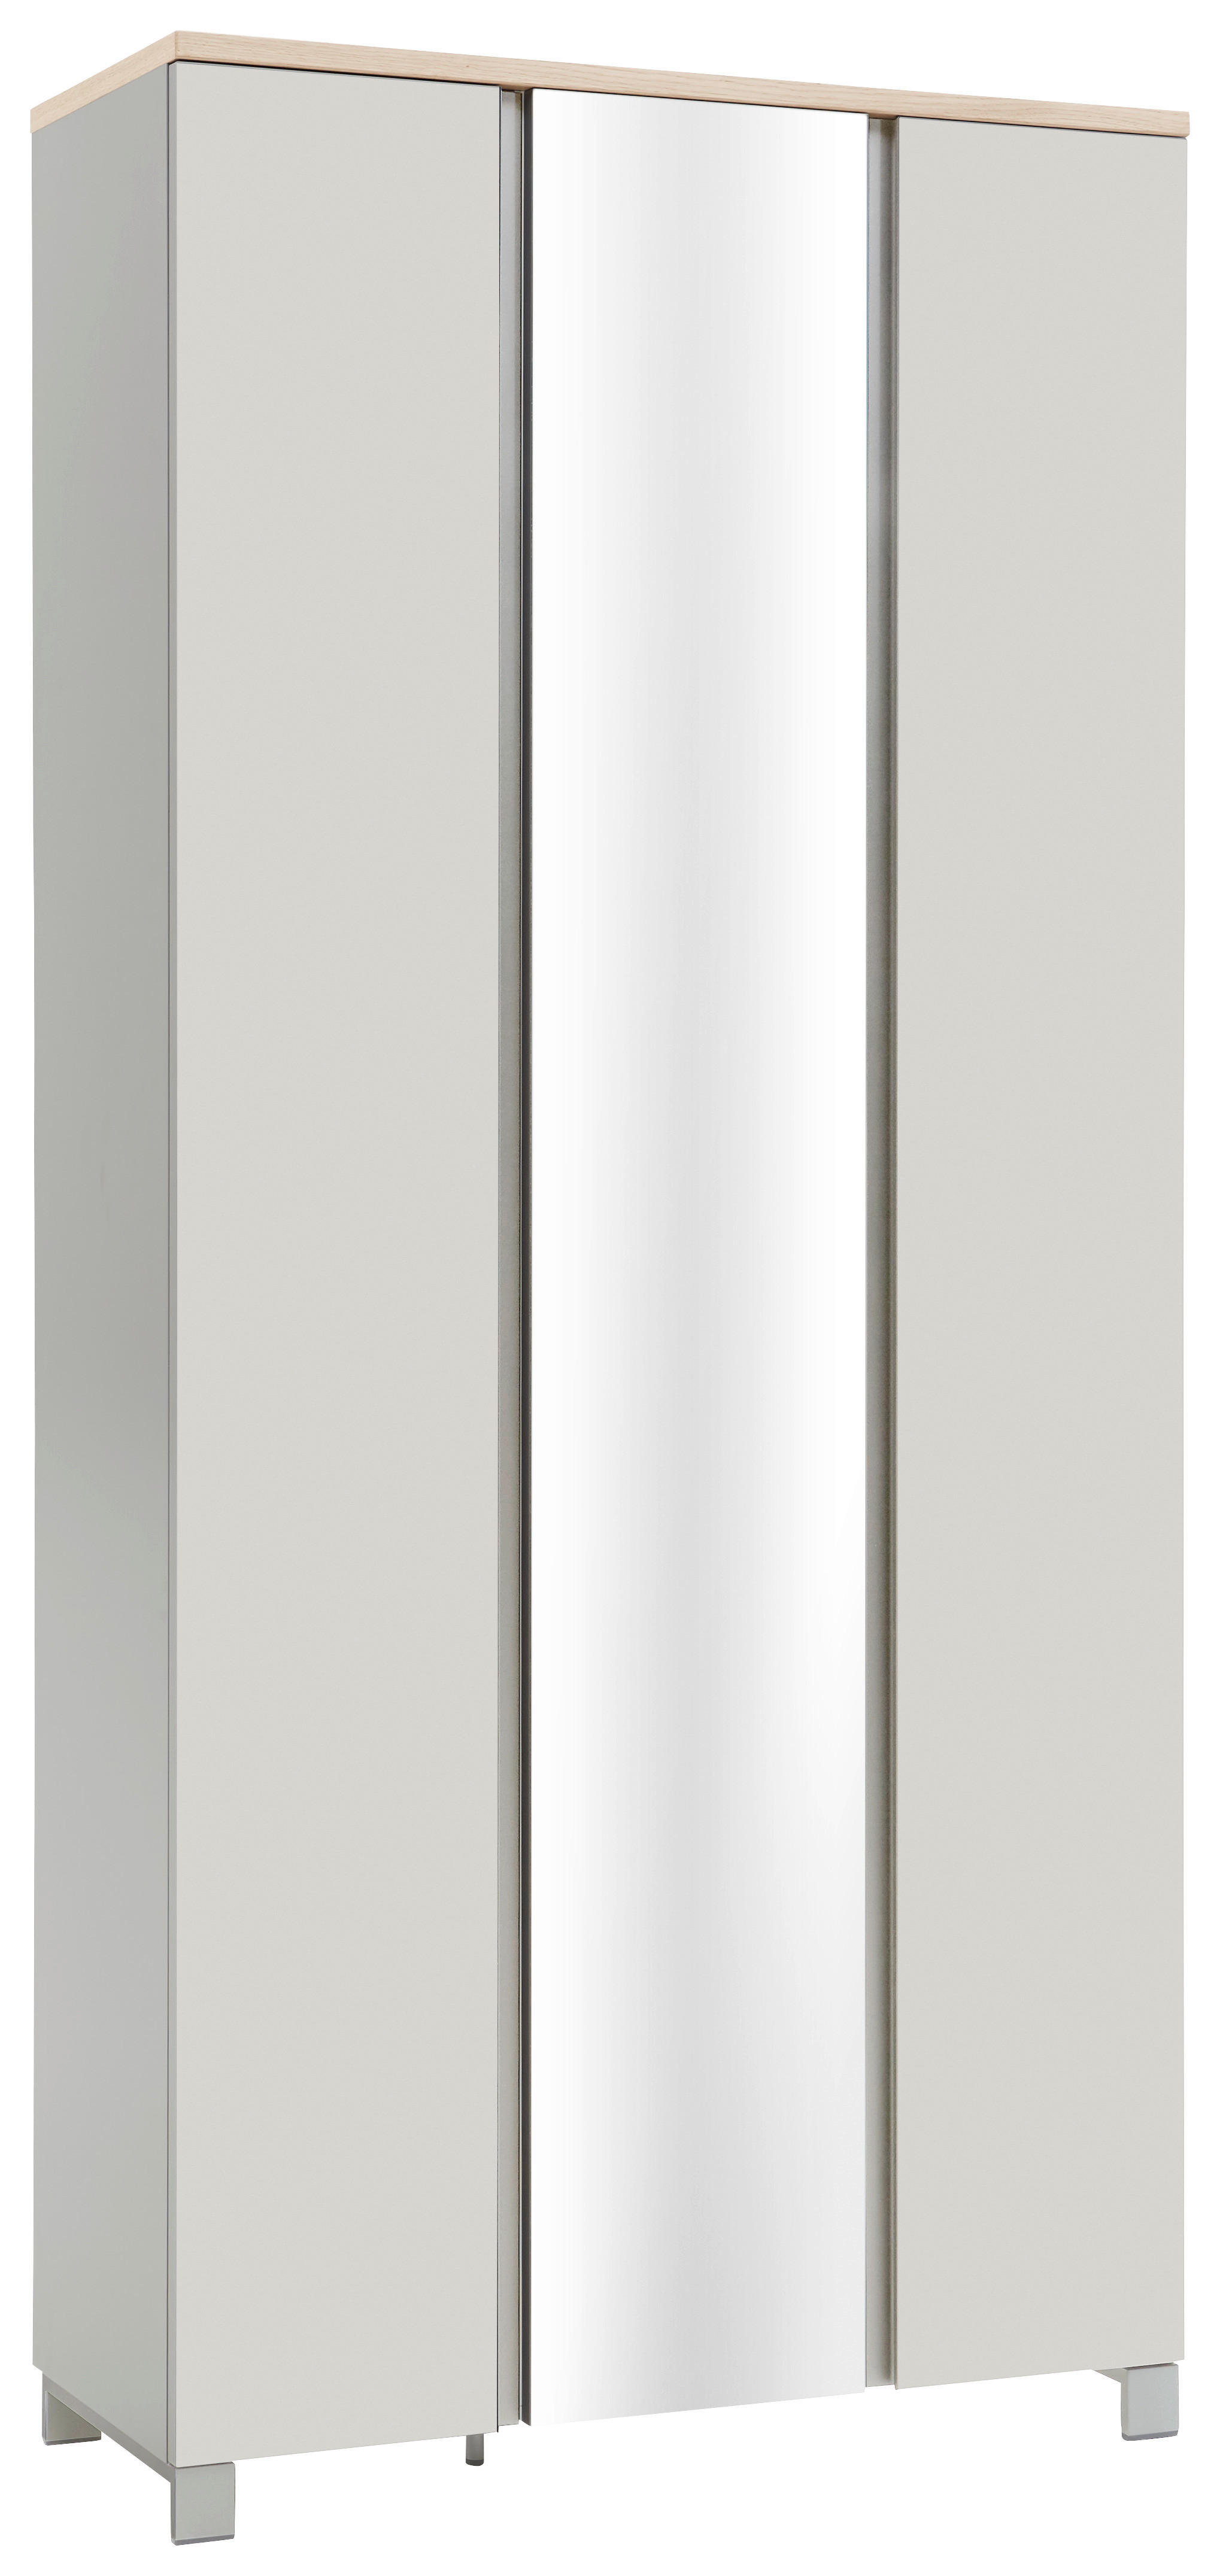 GARDEROBENSCHRANK 89/193/37 cm  - Eichefarben/Silberfarben, Design, Holz/Holzwerkstoff (89/193/37cm) - Dieter Knoll